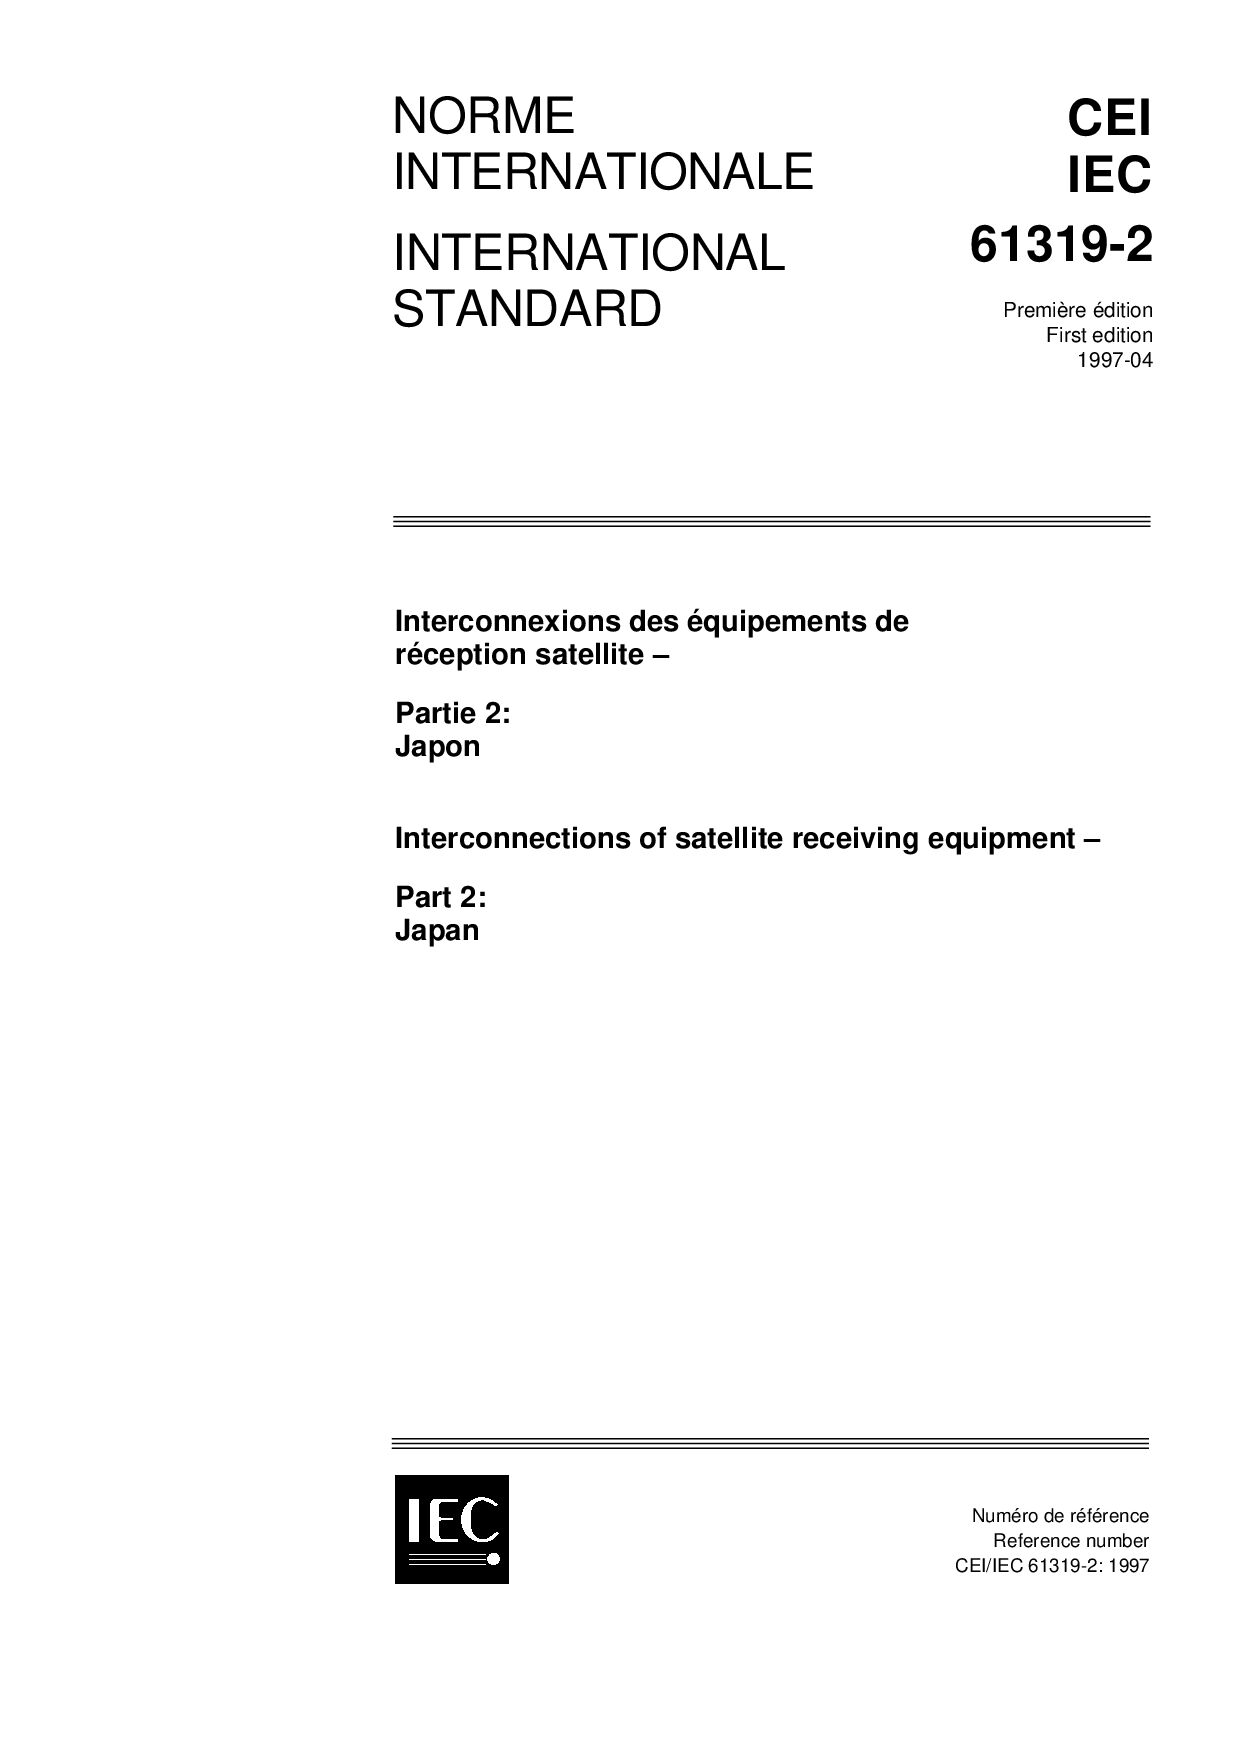 IEC 61319-2:1997